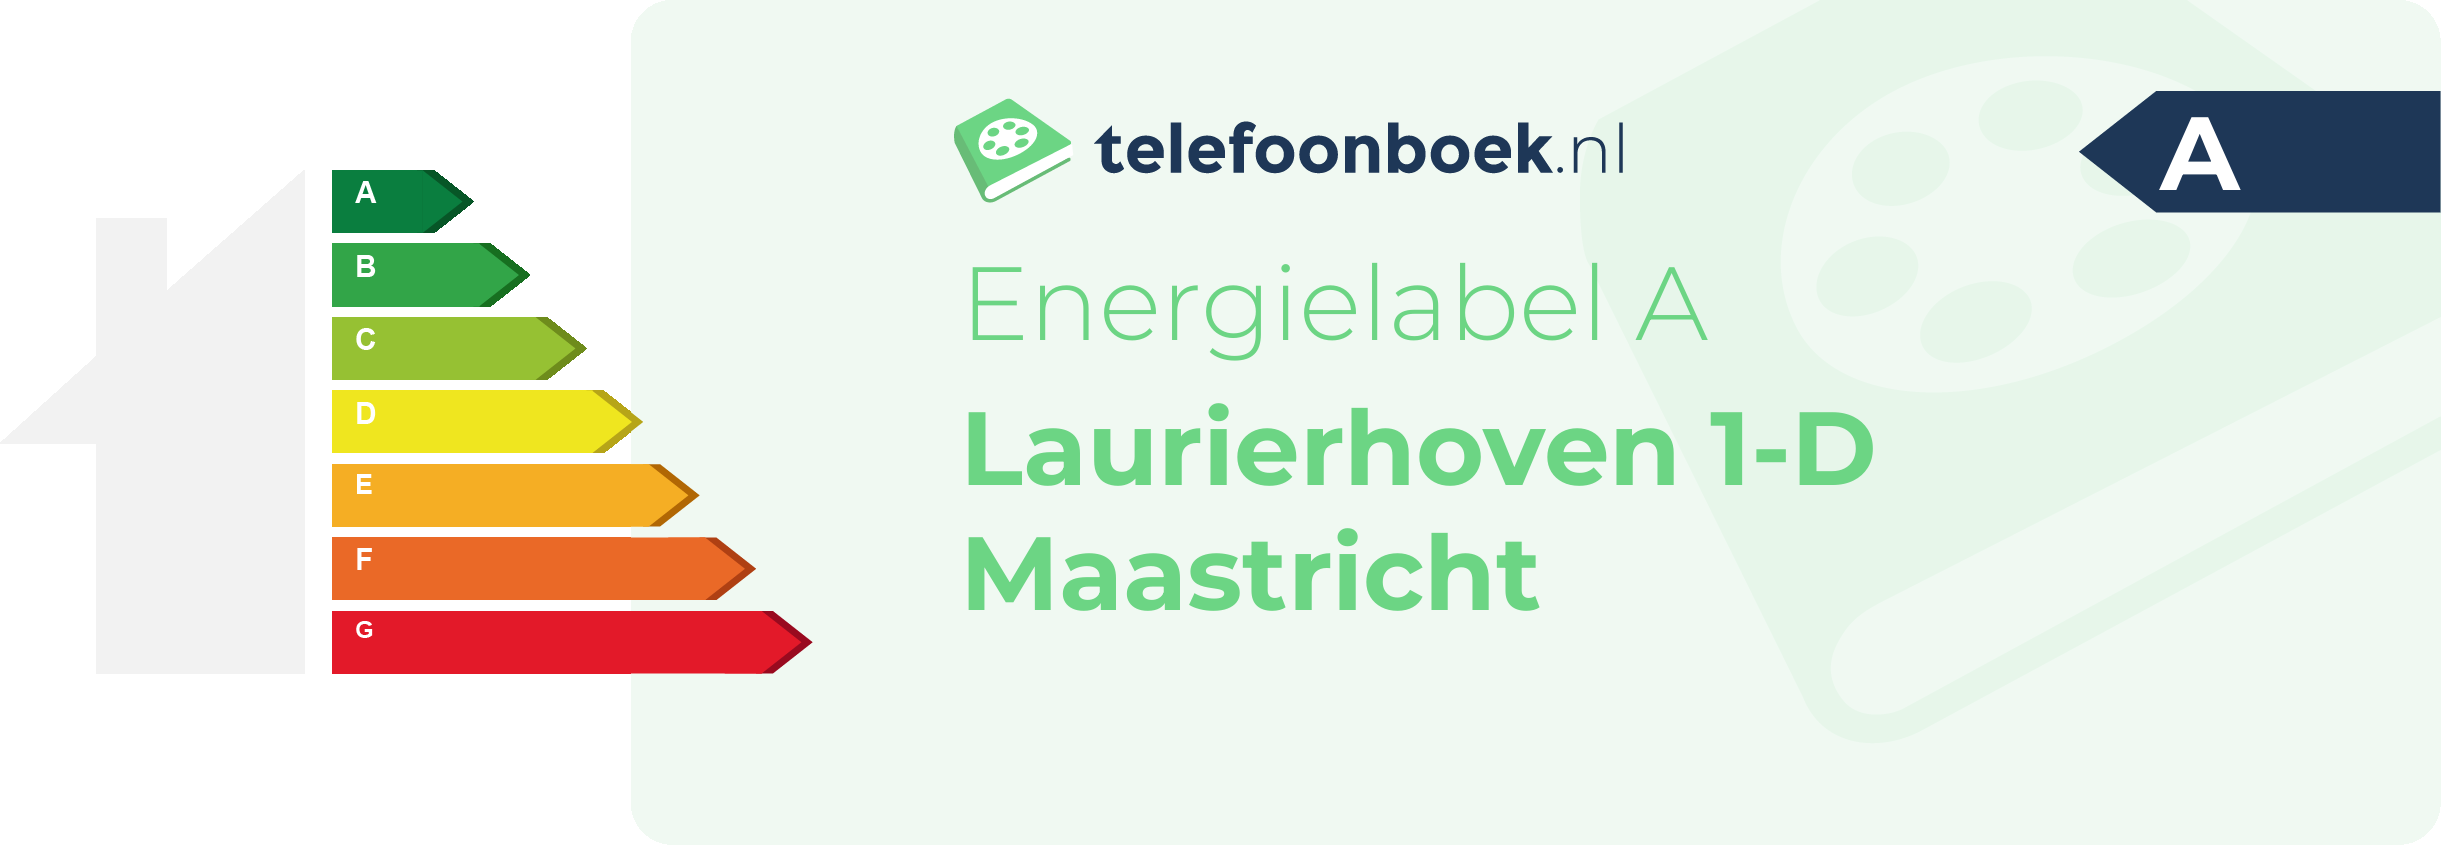 Energielabel Laurierhoven 1-D Maastricht